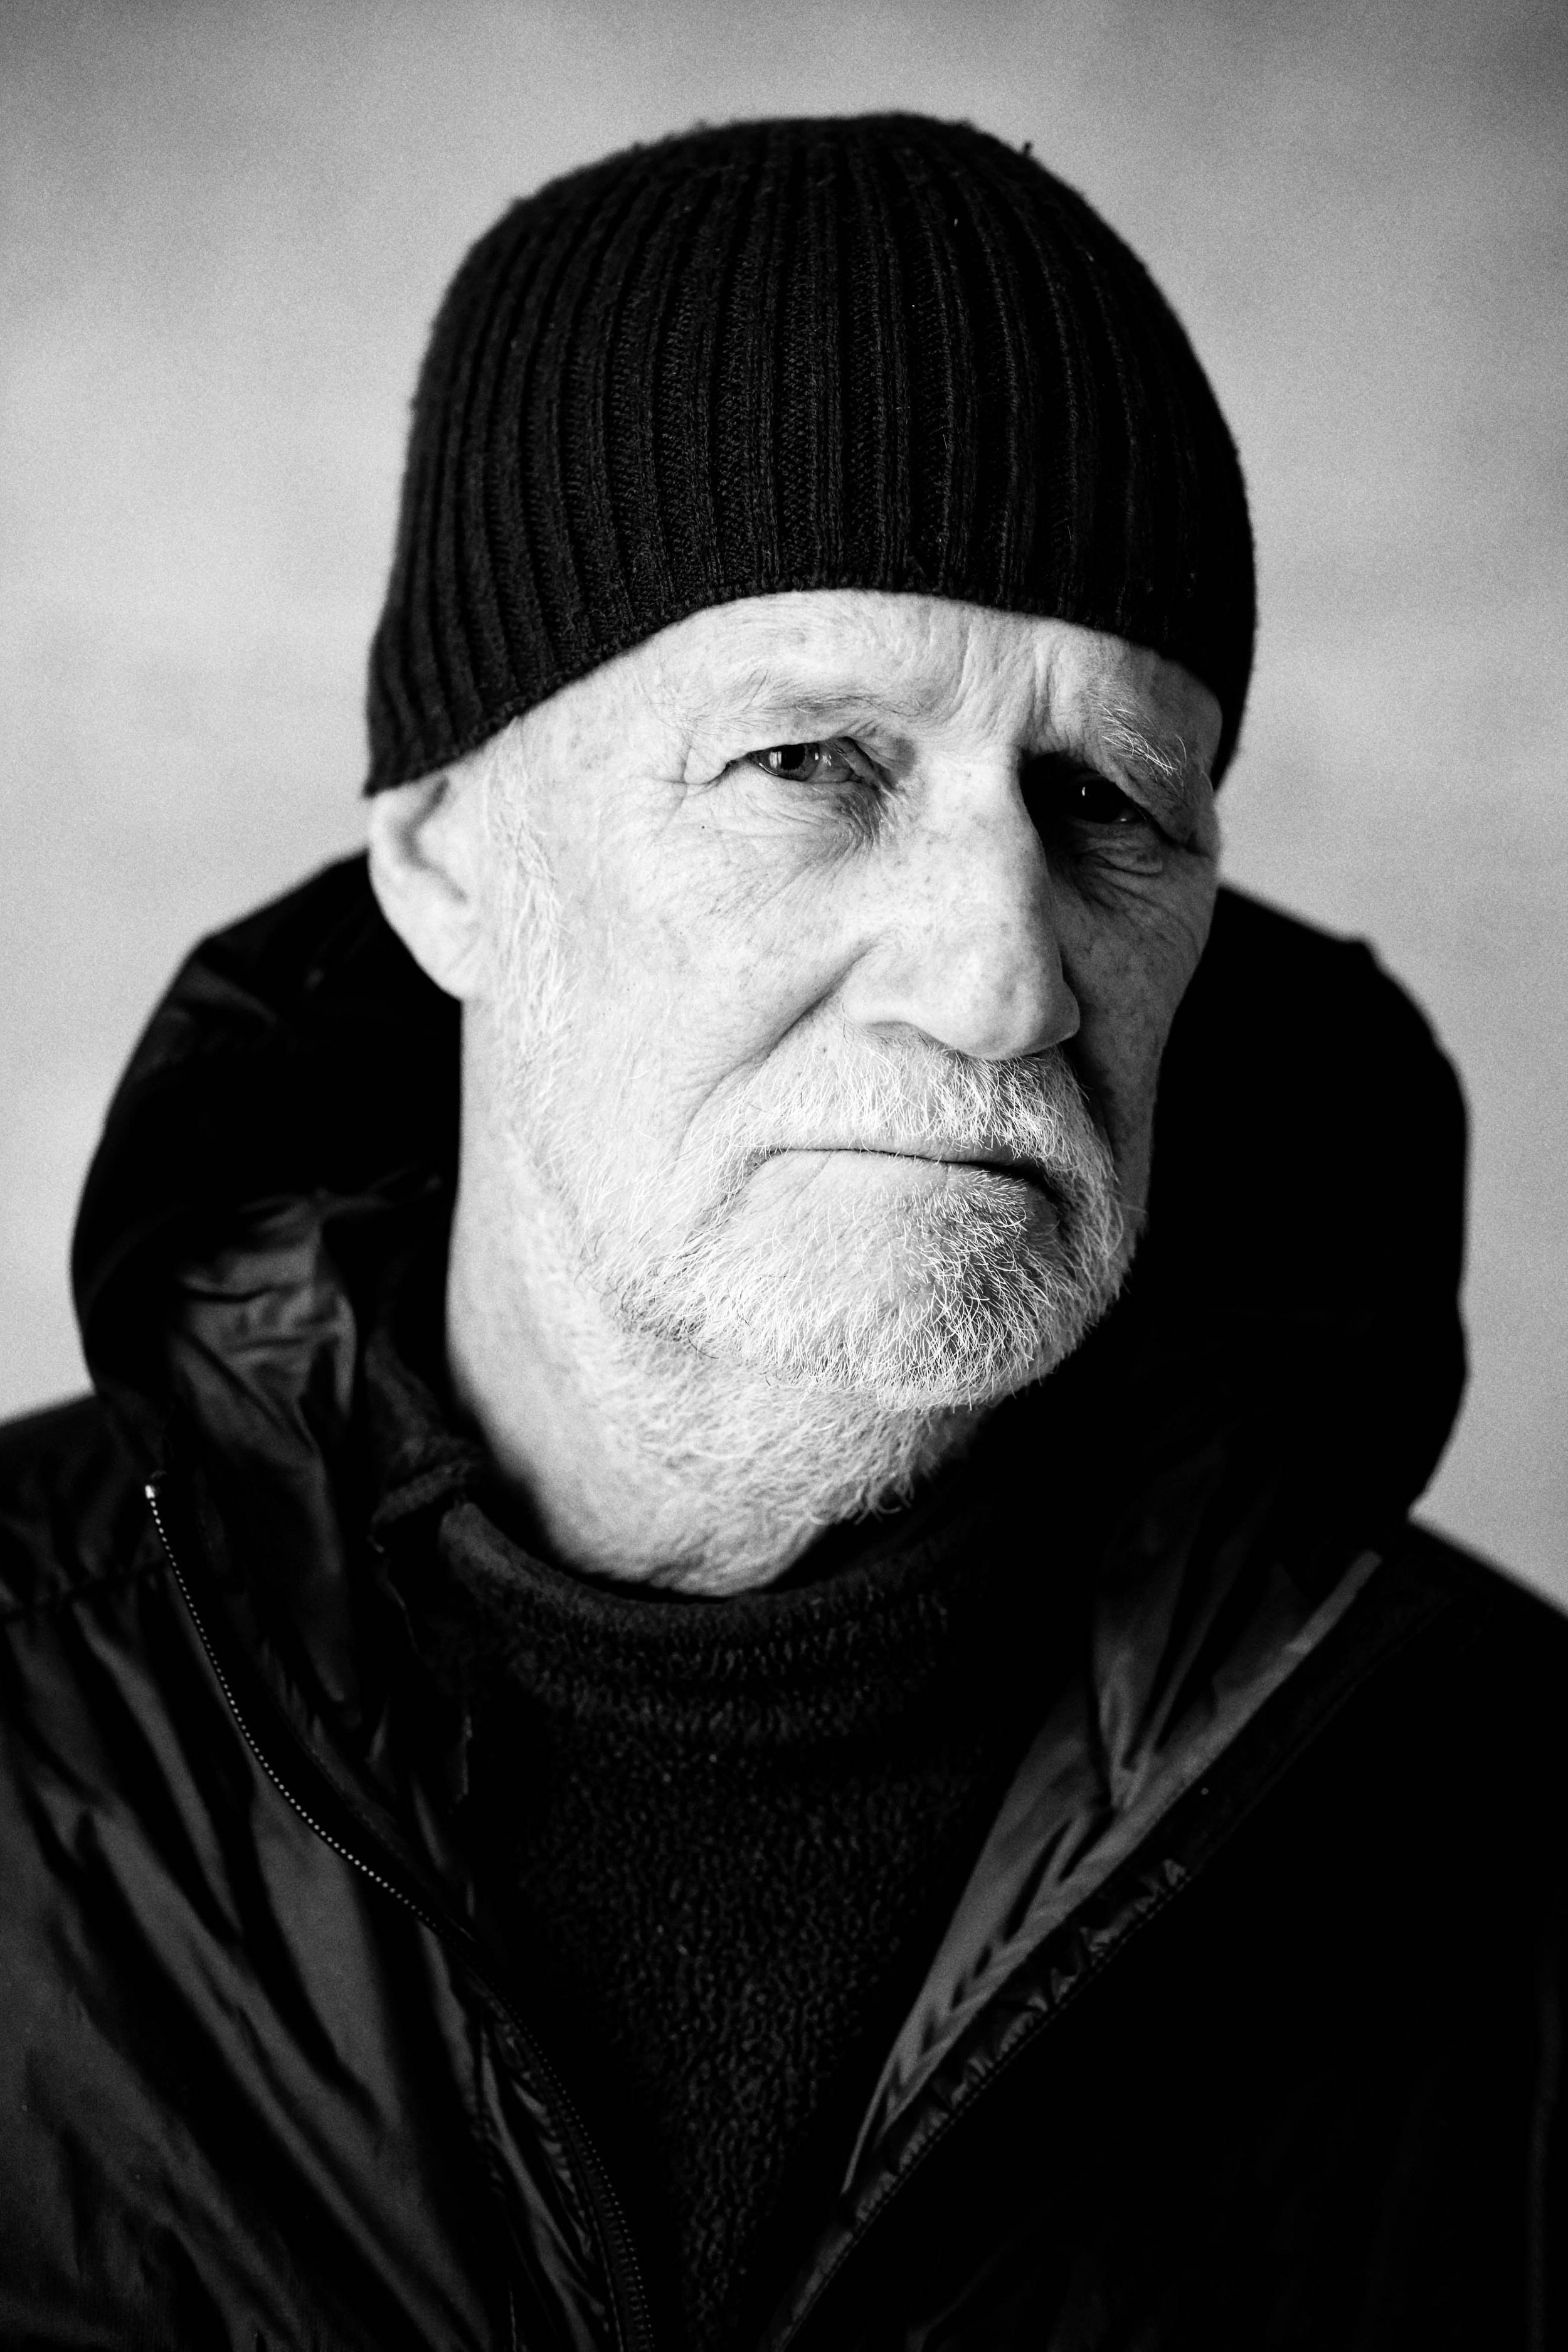 Bonn Fotograf Portrait Schwarzweiss Fotostudio Daniel Hammelstein Atelier beste Empfehlung Charakterportrait Männer P1161812_DxOFP.jpg